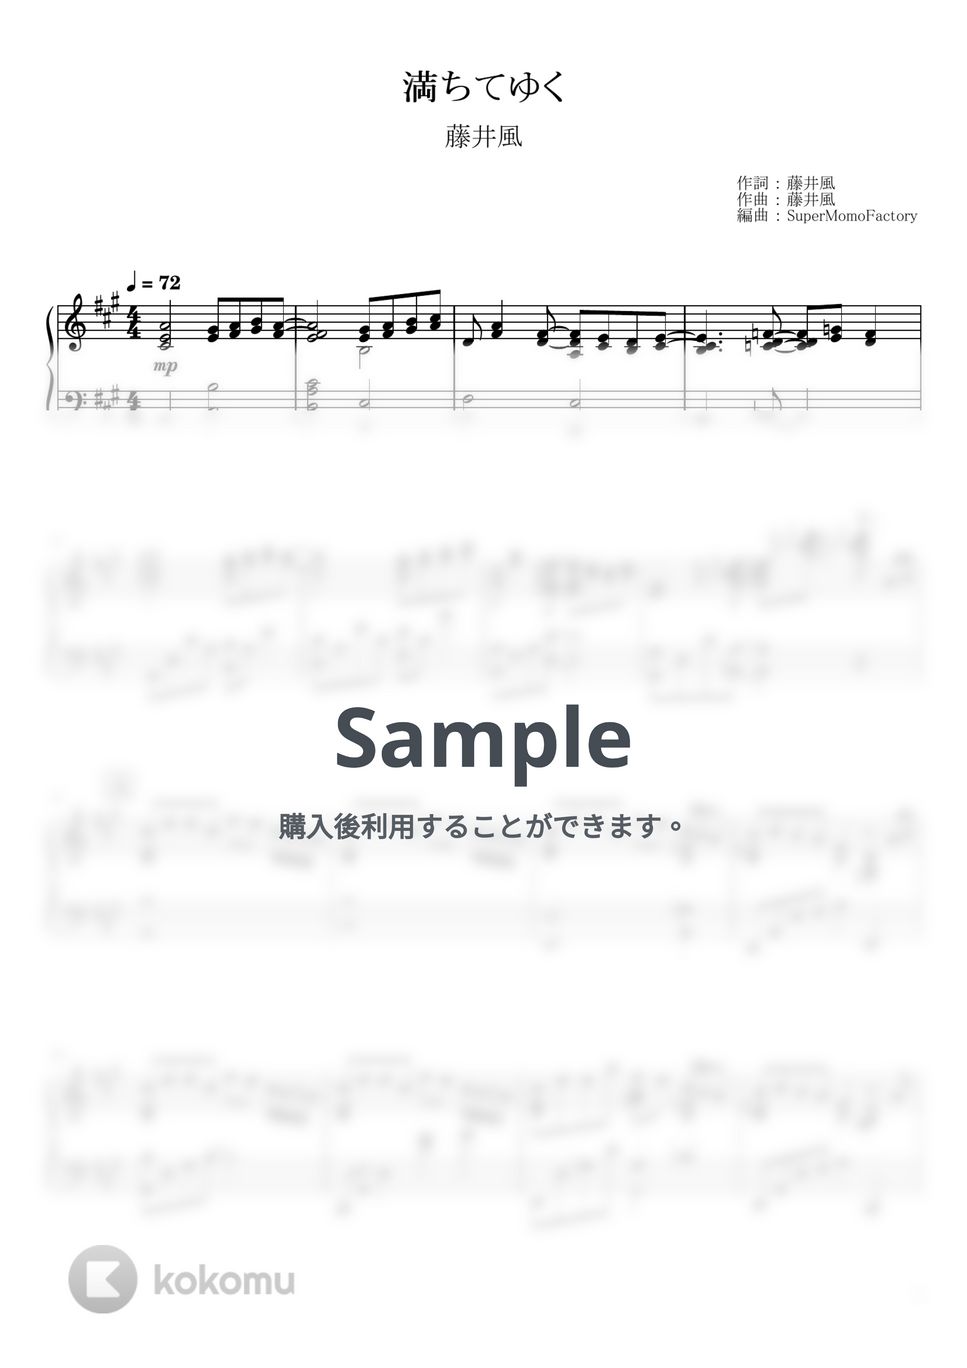 藤井風 - 満ちてゆく (ピアノソロ / 上級) by SuperMomoFactory